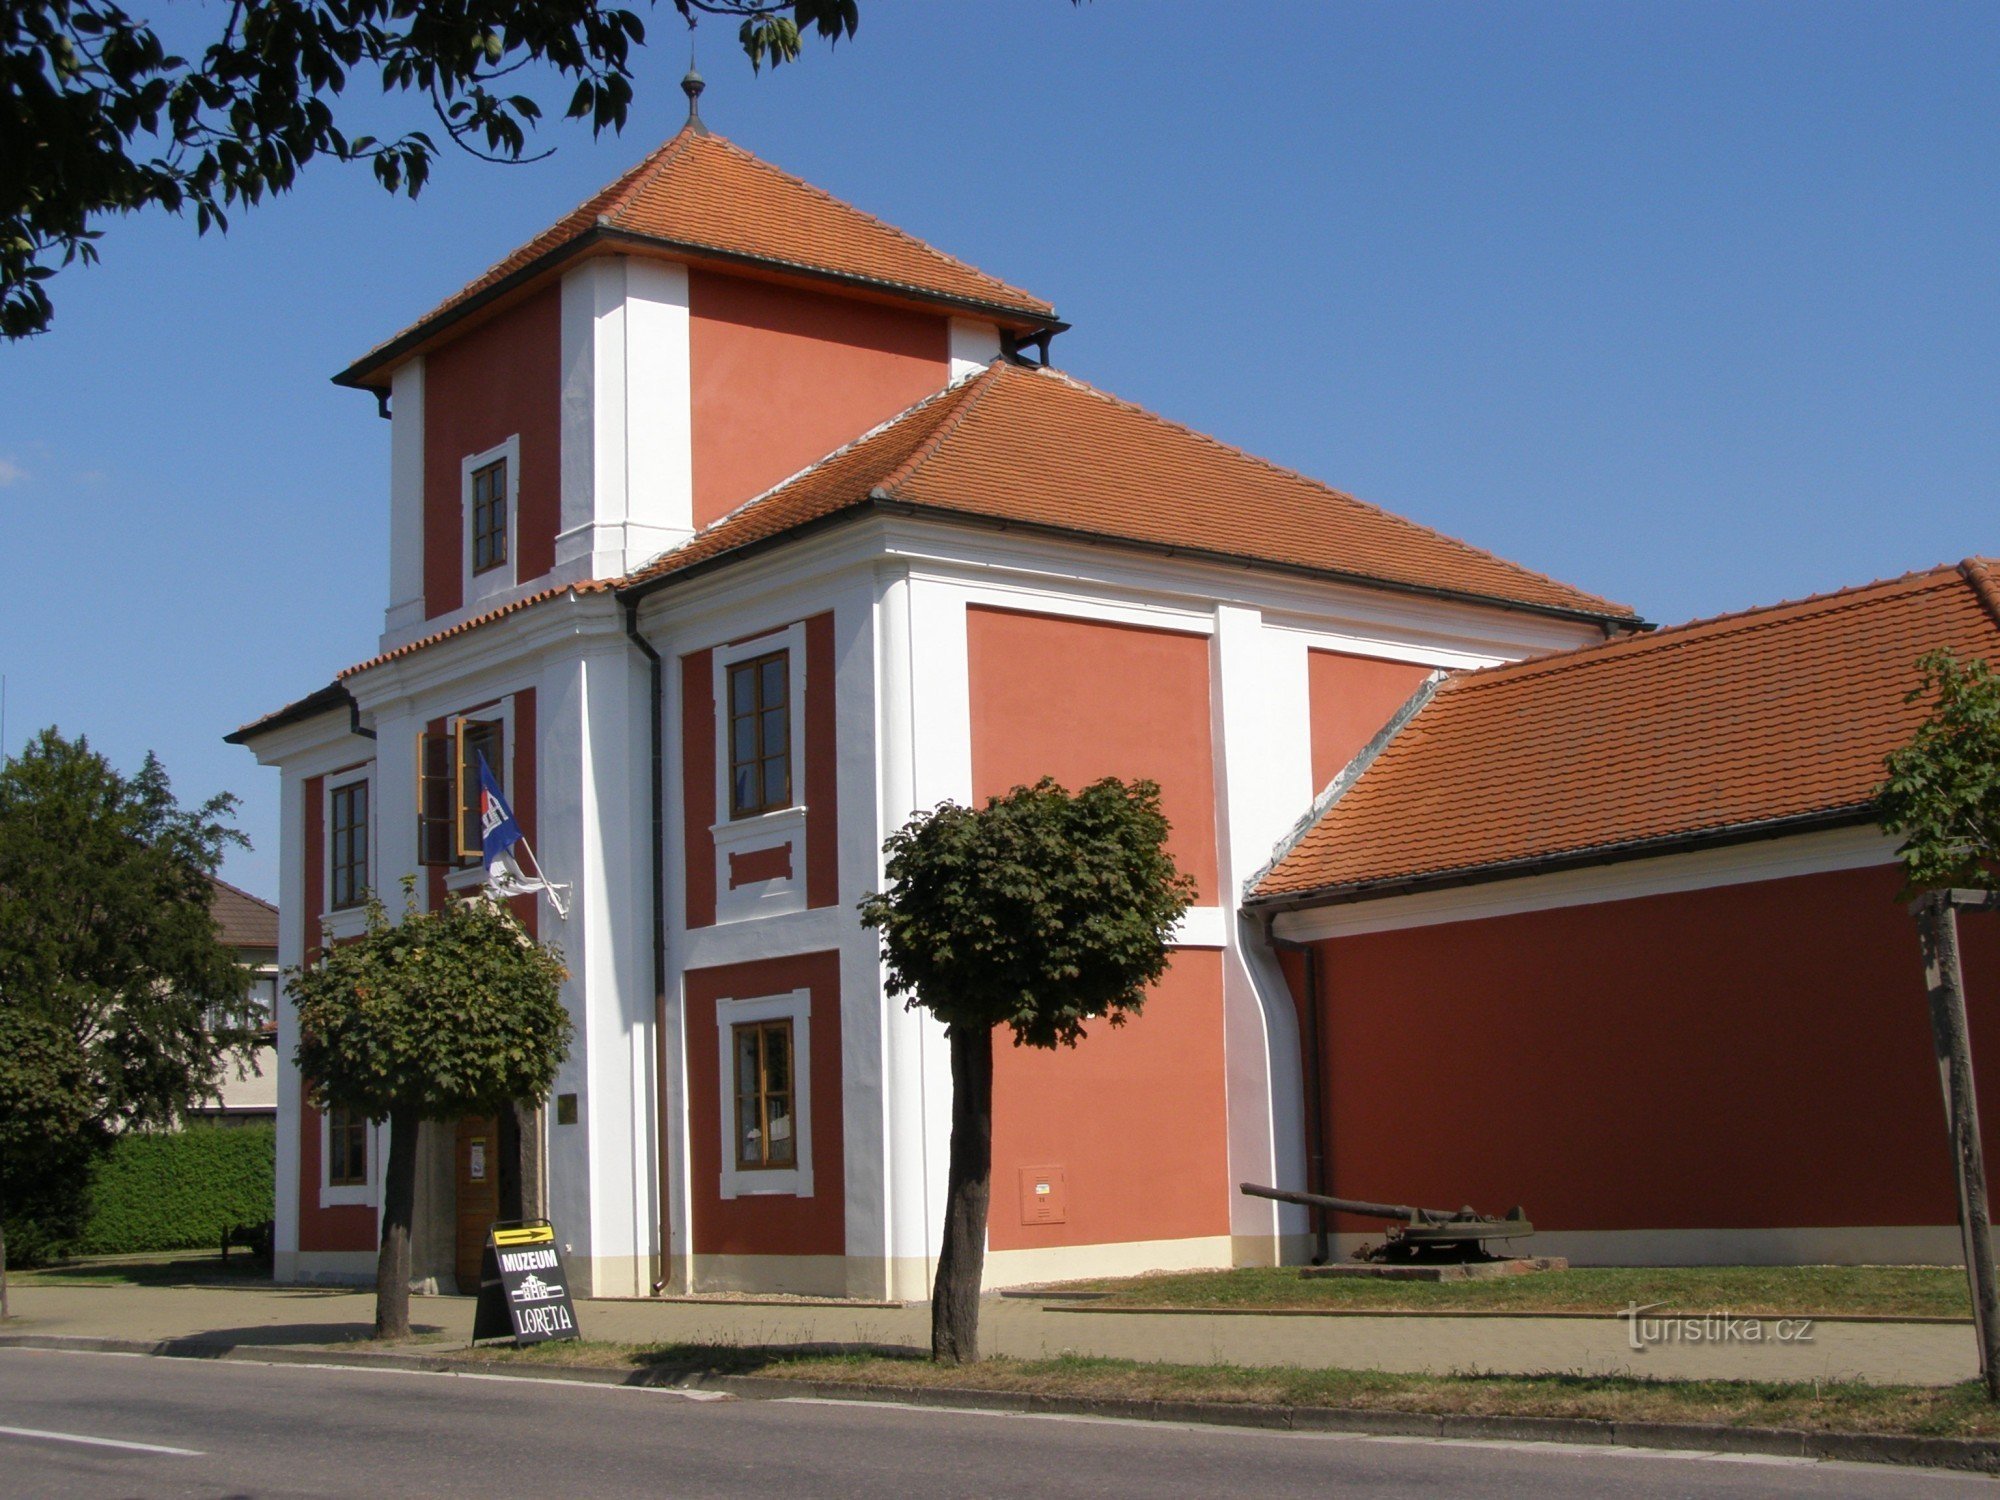 Chlumec nad Cidlinou - Loreta, bảo tàng thành phố